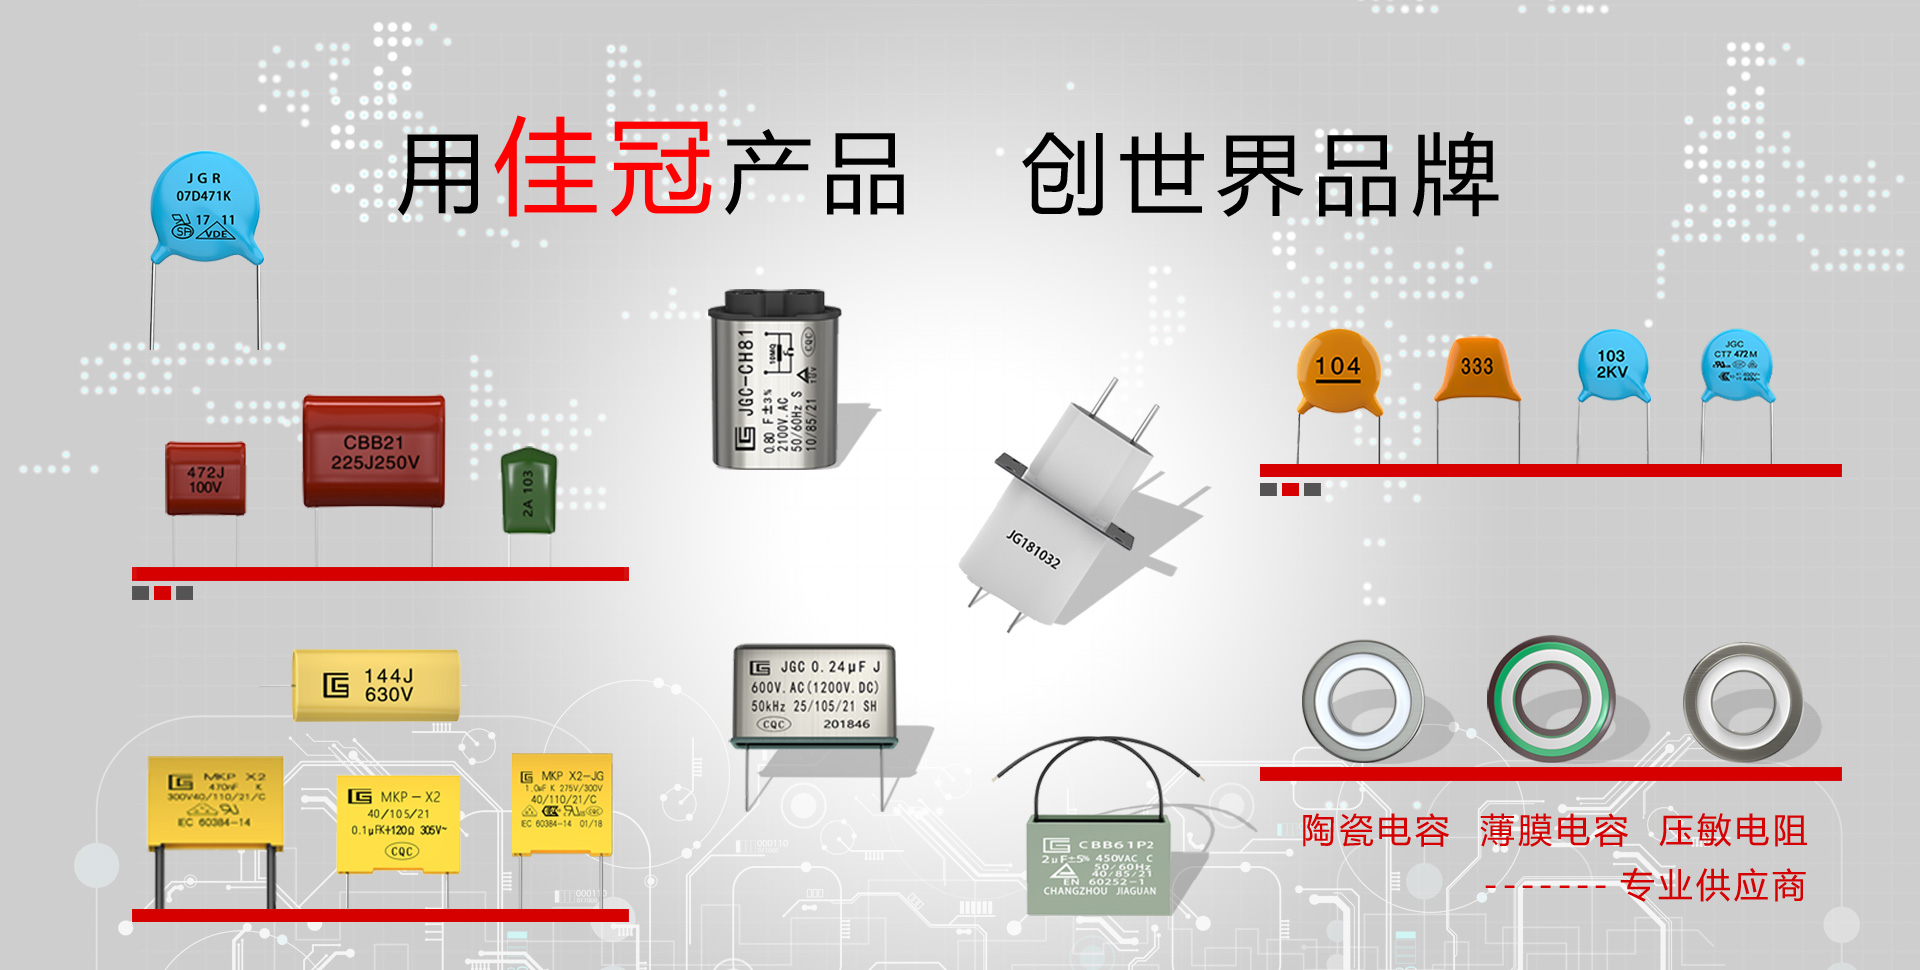 Changzhou Jiaguan Electronics Co., Ltd.